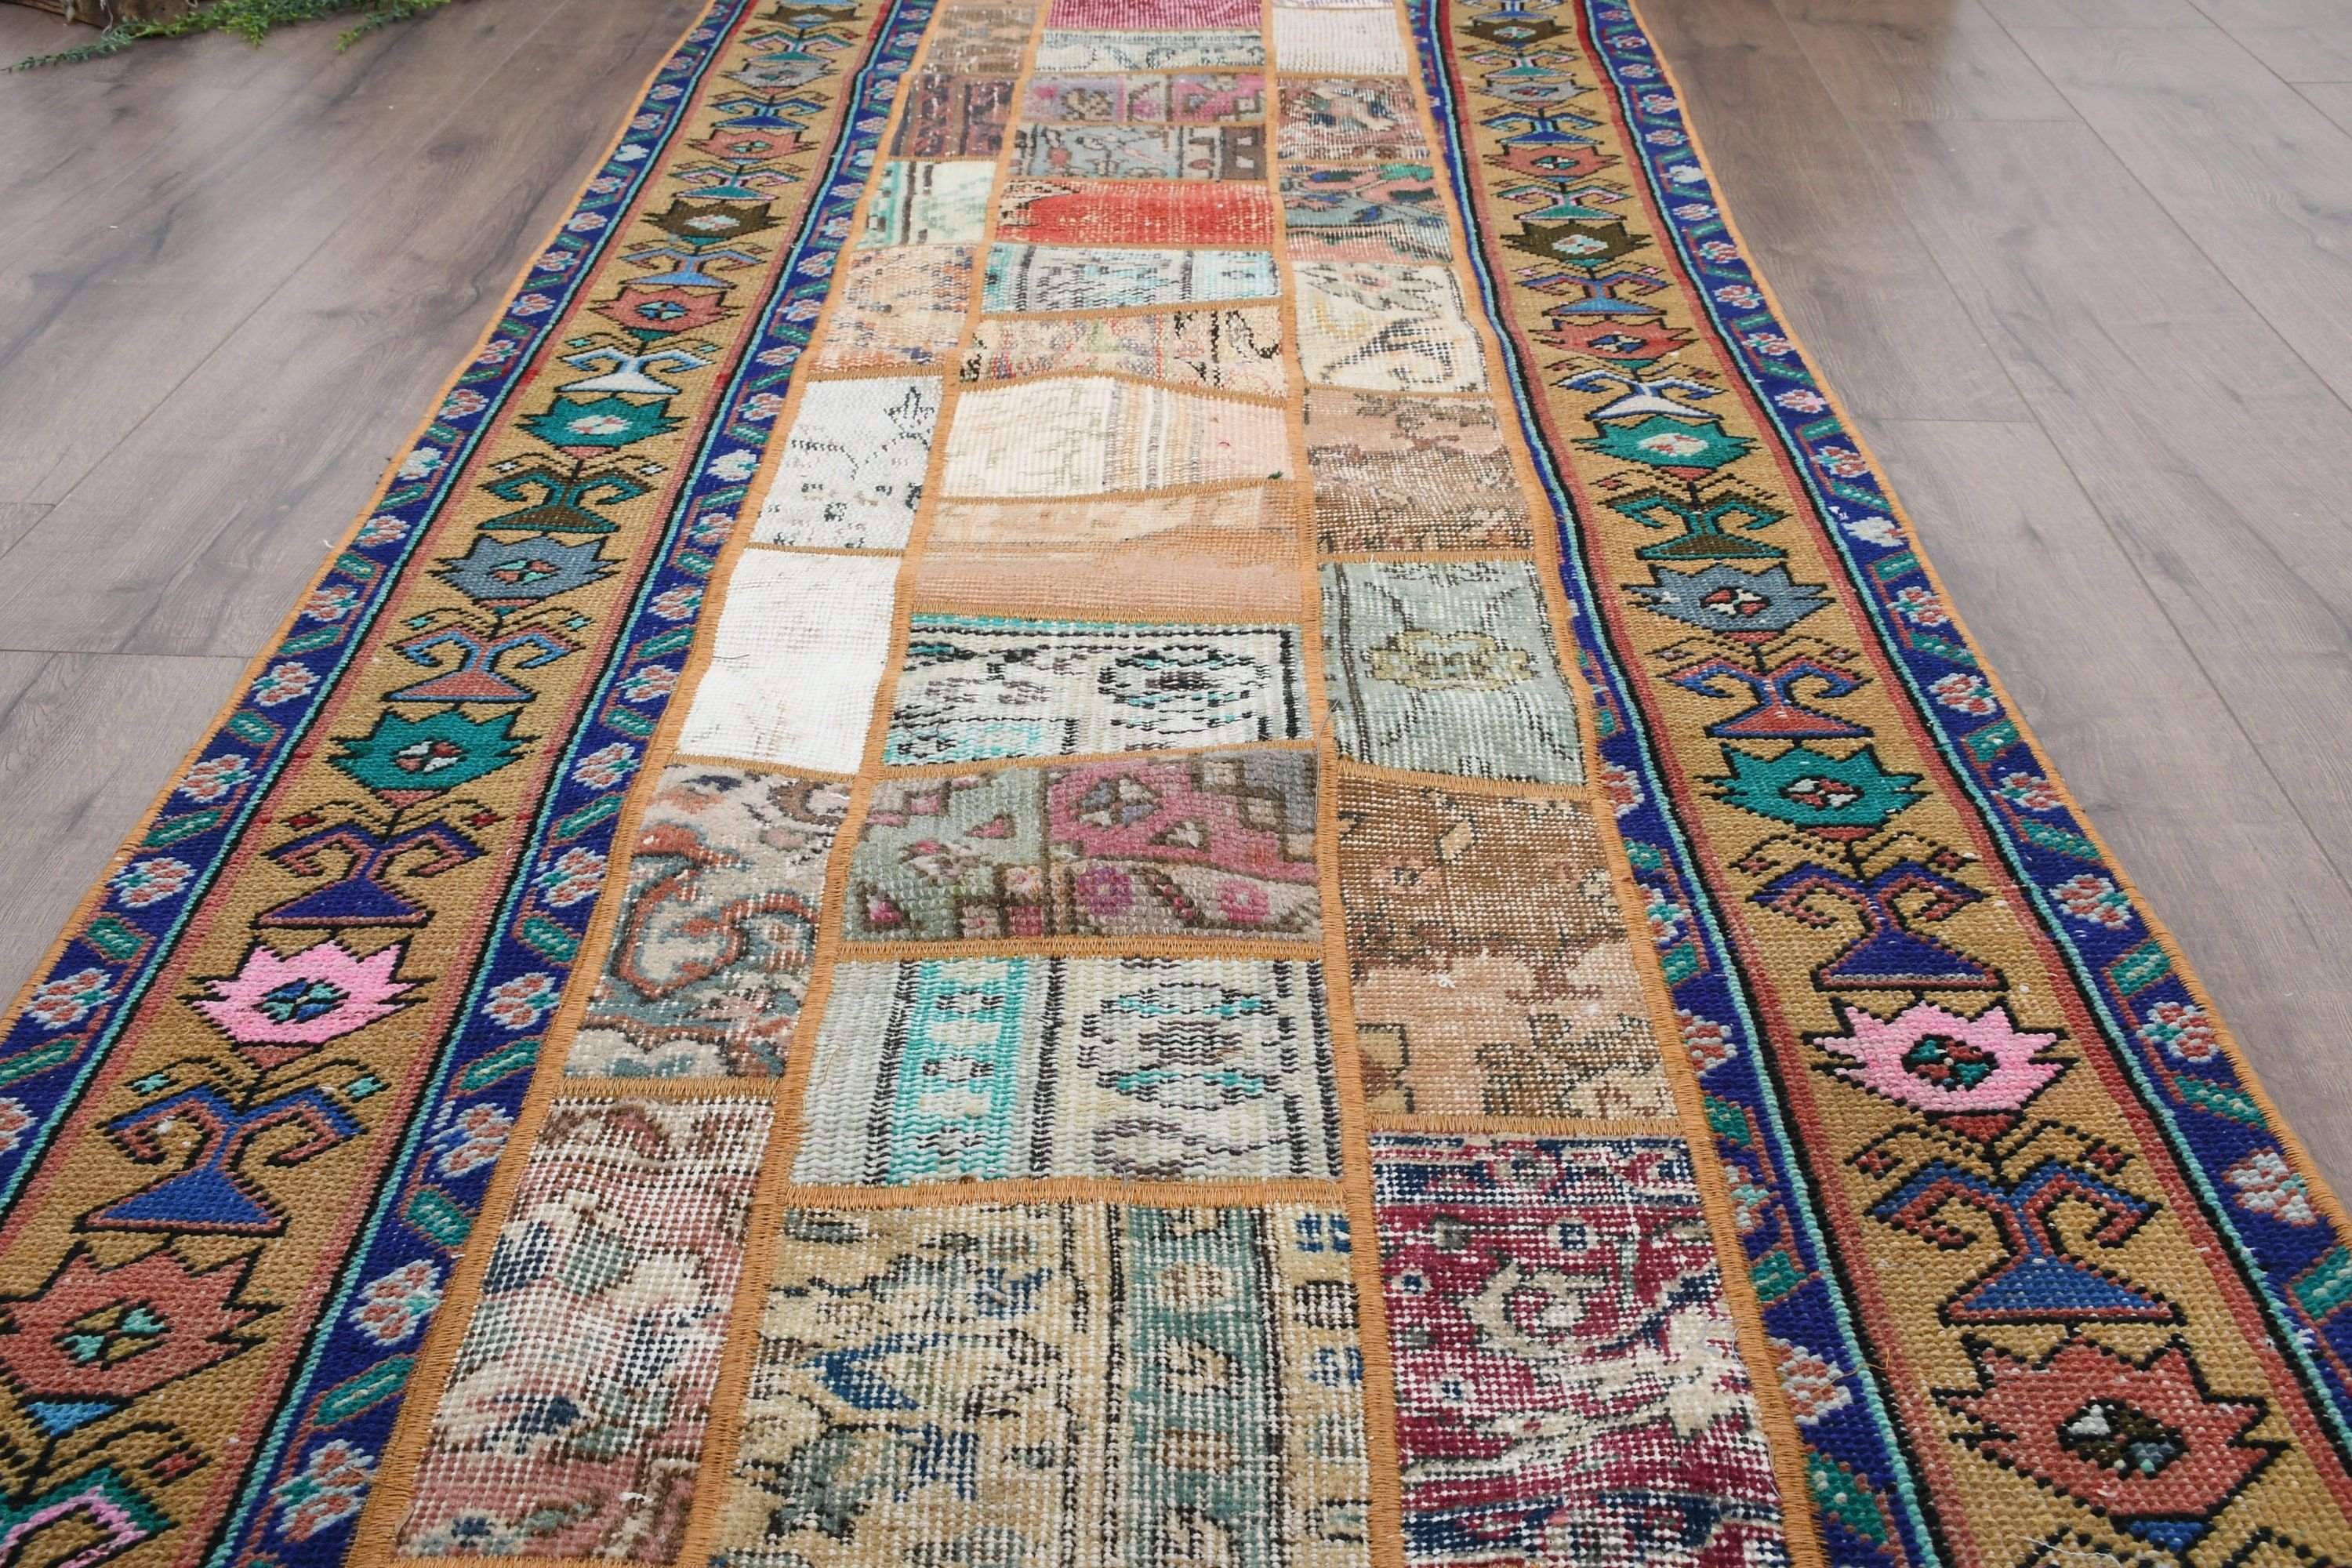 Turkish Rug, Aztec Rugs, Antique Rugs, Hallway Rugs, Oriental Rugs, Vintage Rug, 2.9x8.9 ft Runner Rug, Rainbow Floor Rug, Corridor Rug